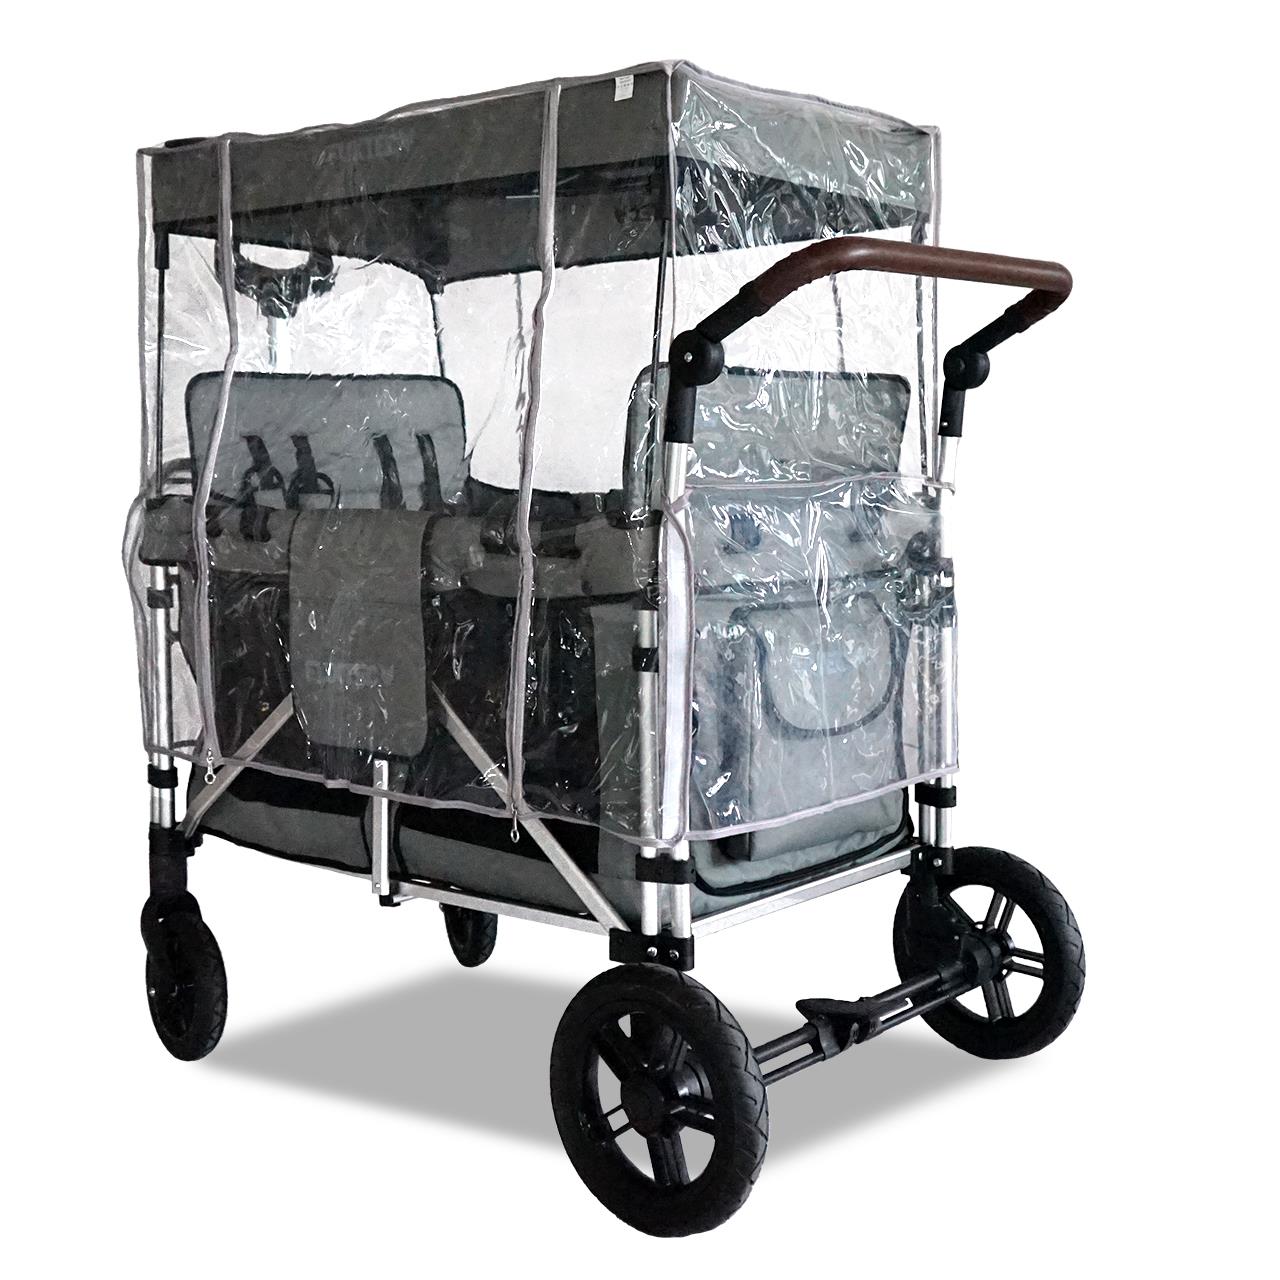 FUXTEC - Protection pluie chariot de transport pliable - Family Cruiser